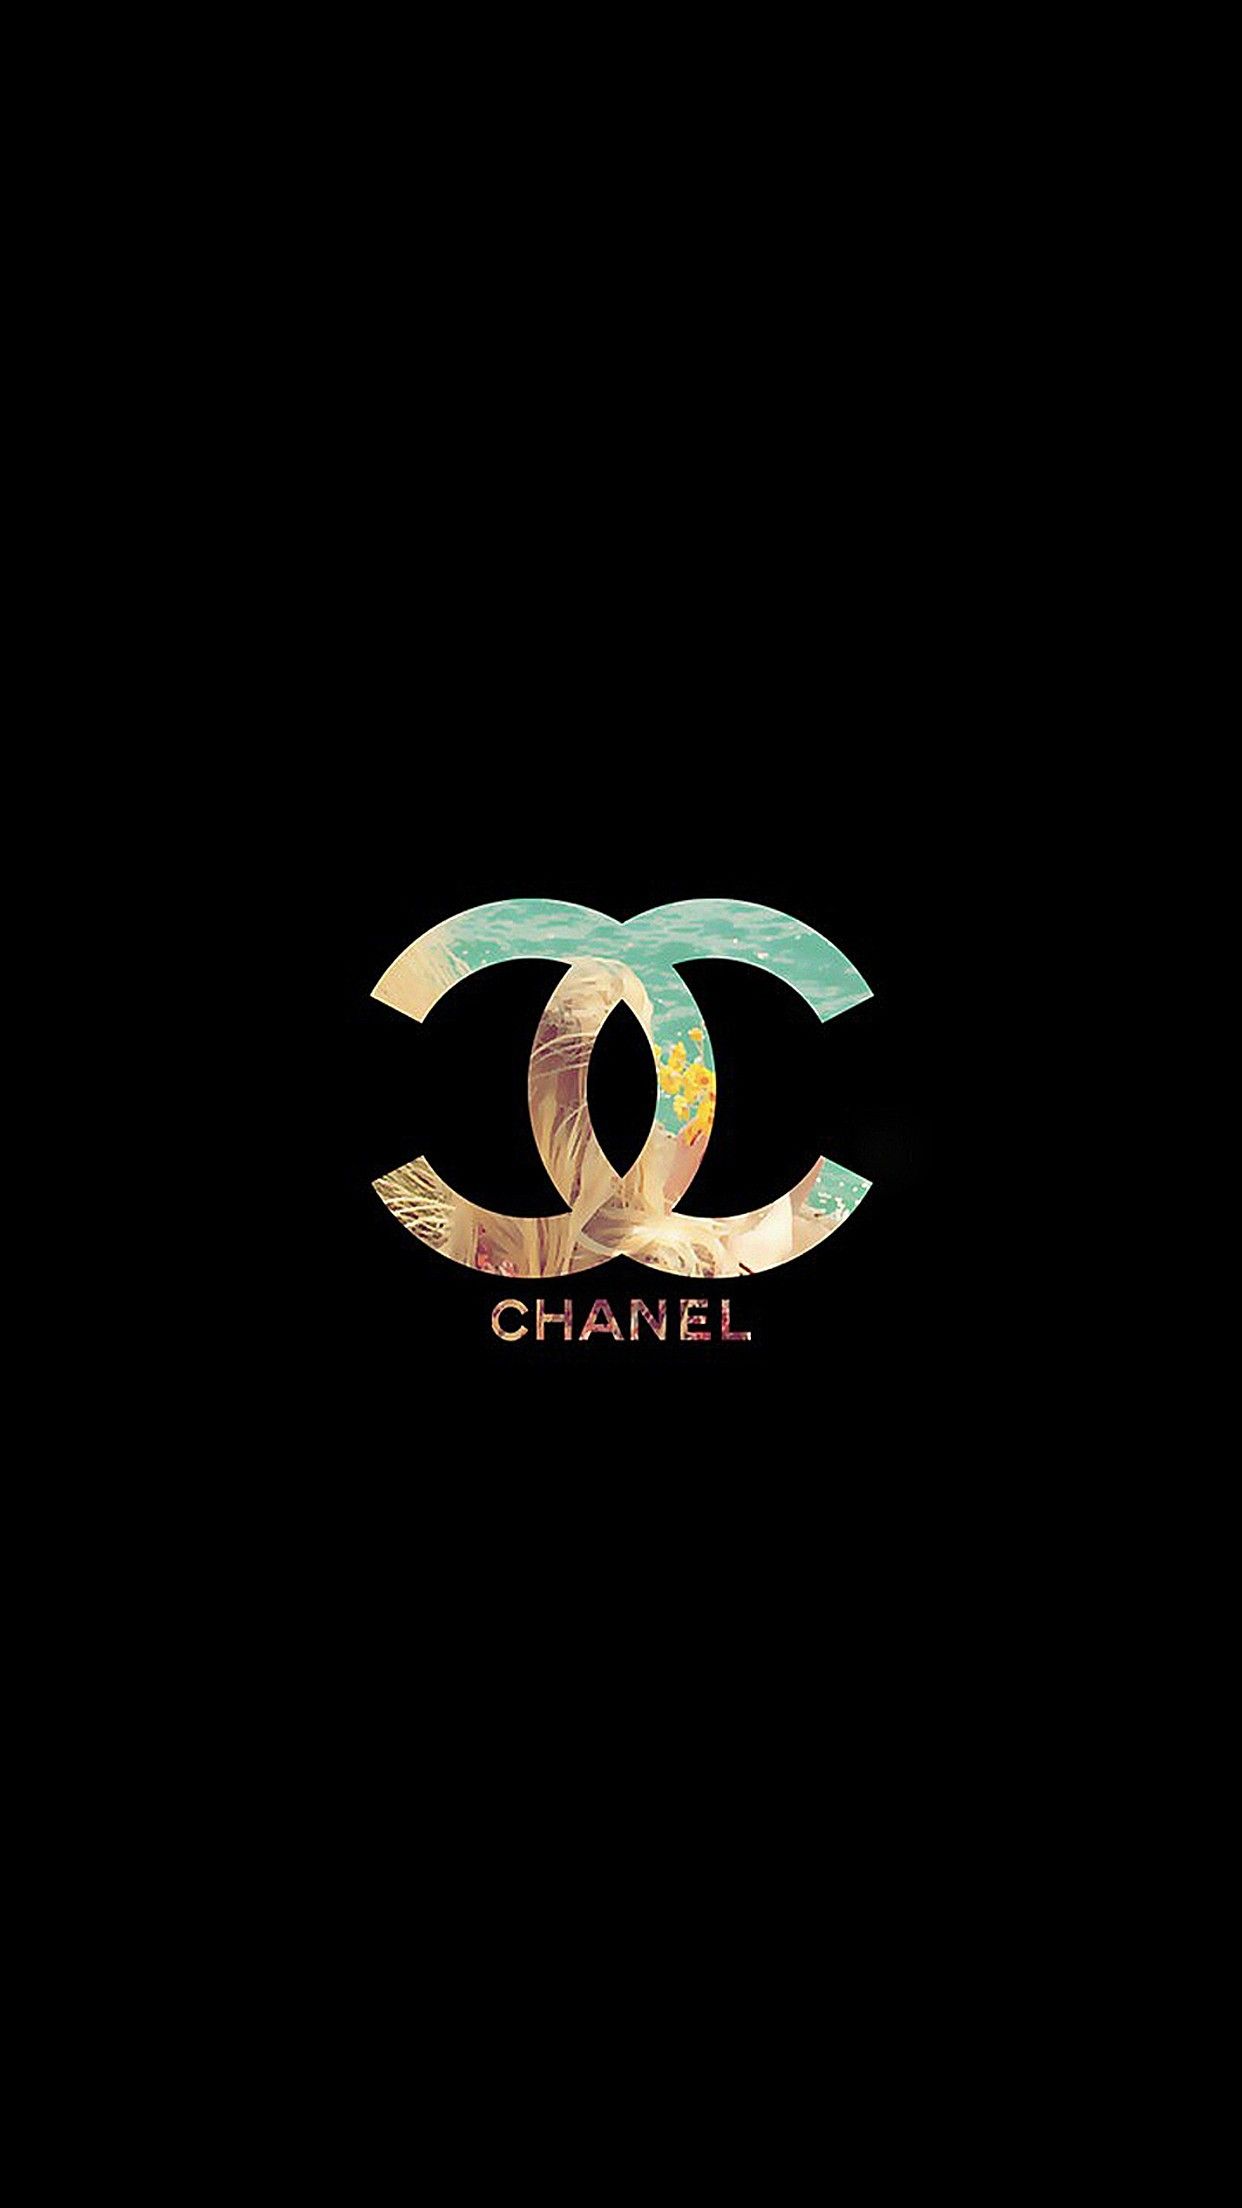 Chanel Wallpapers HD (más de 70 imágenes)